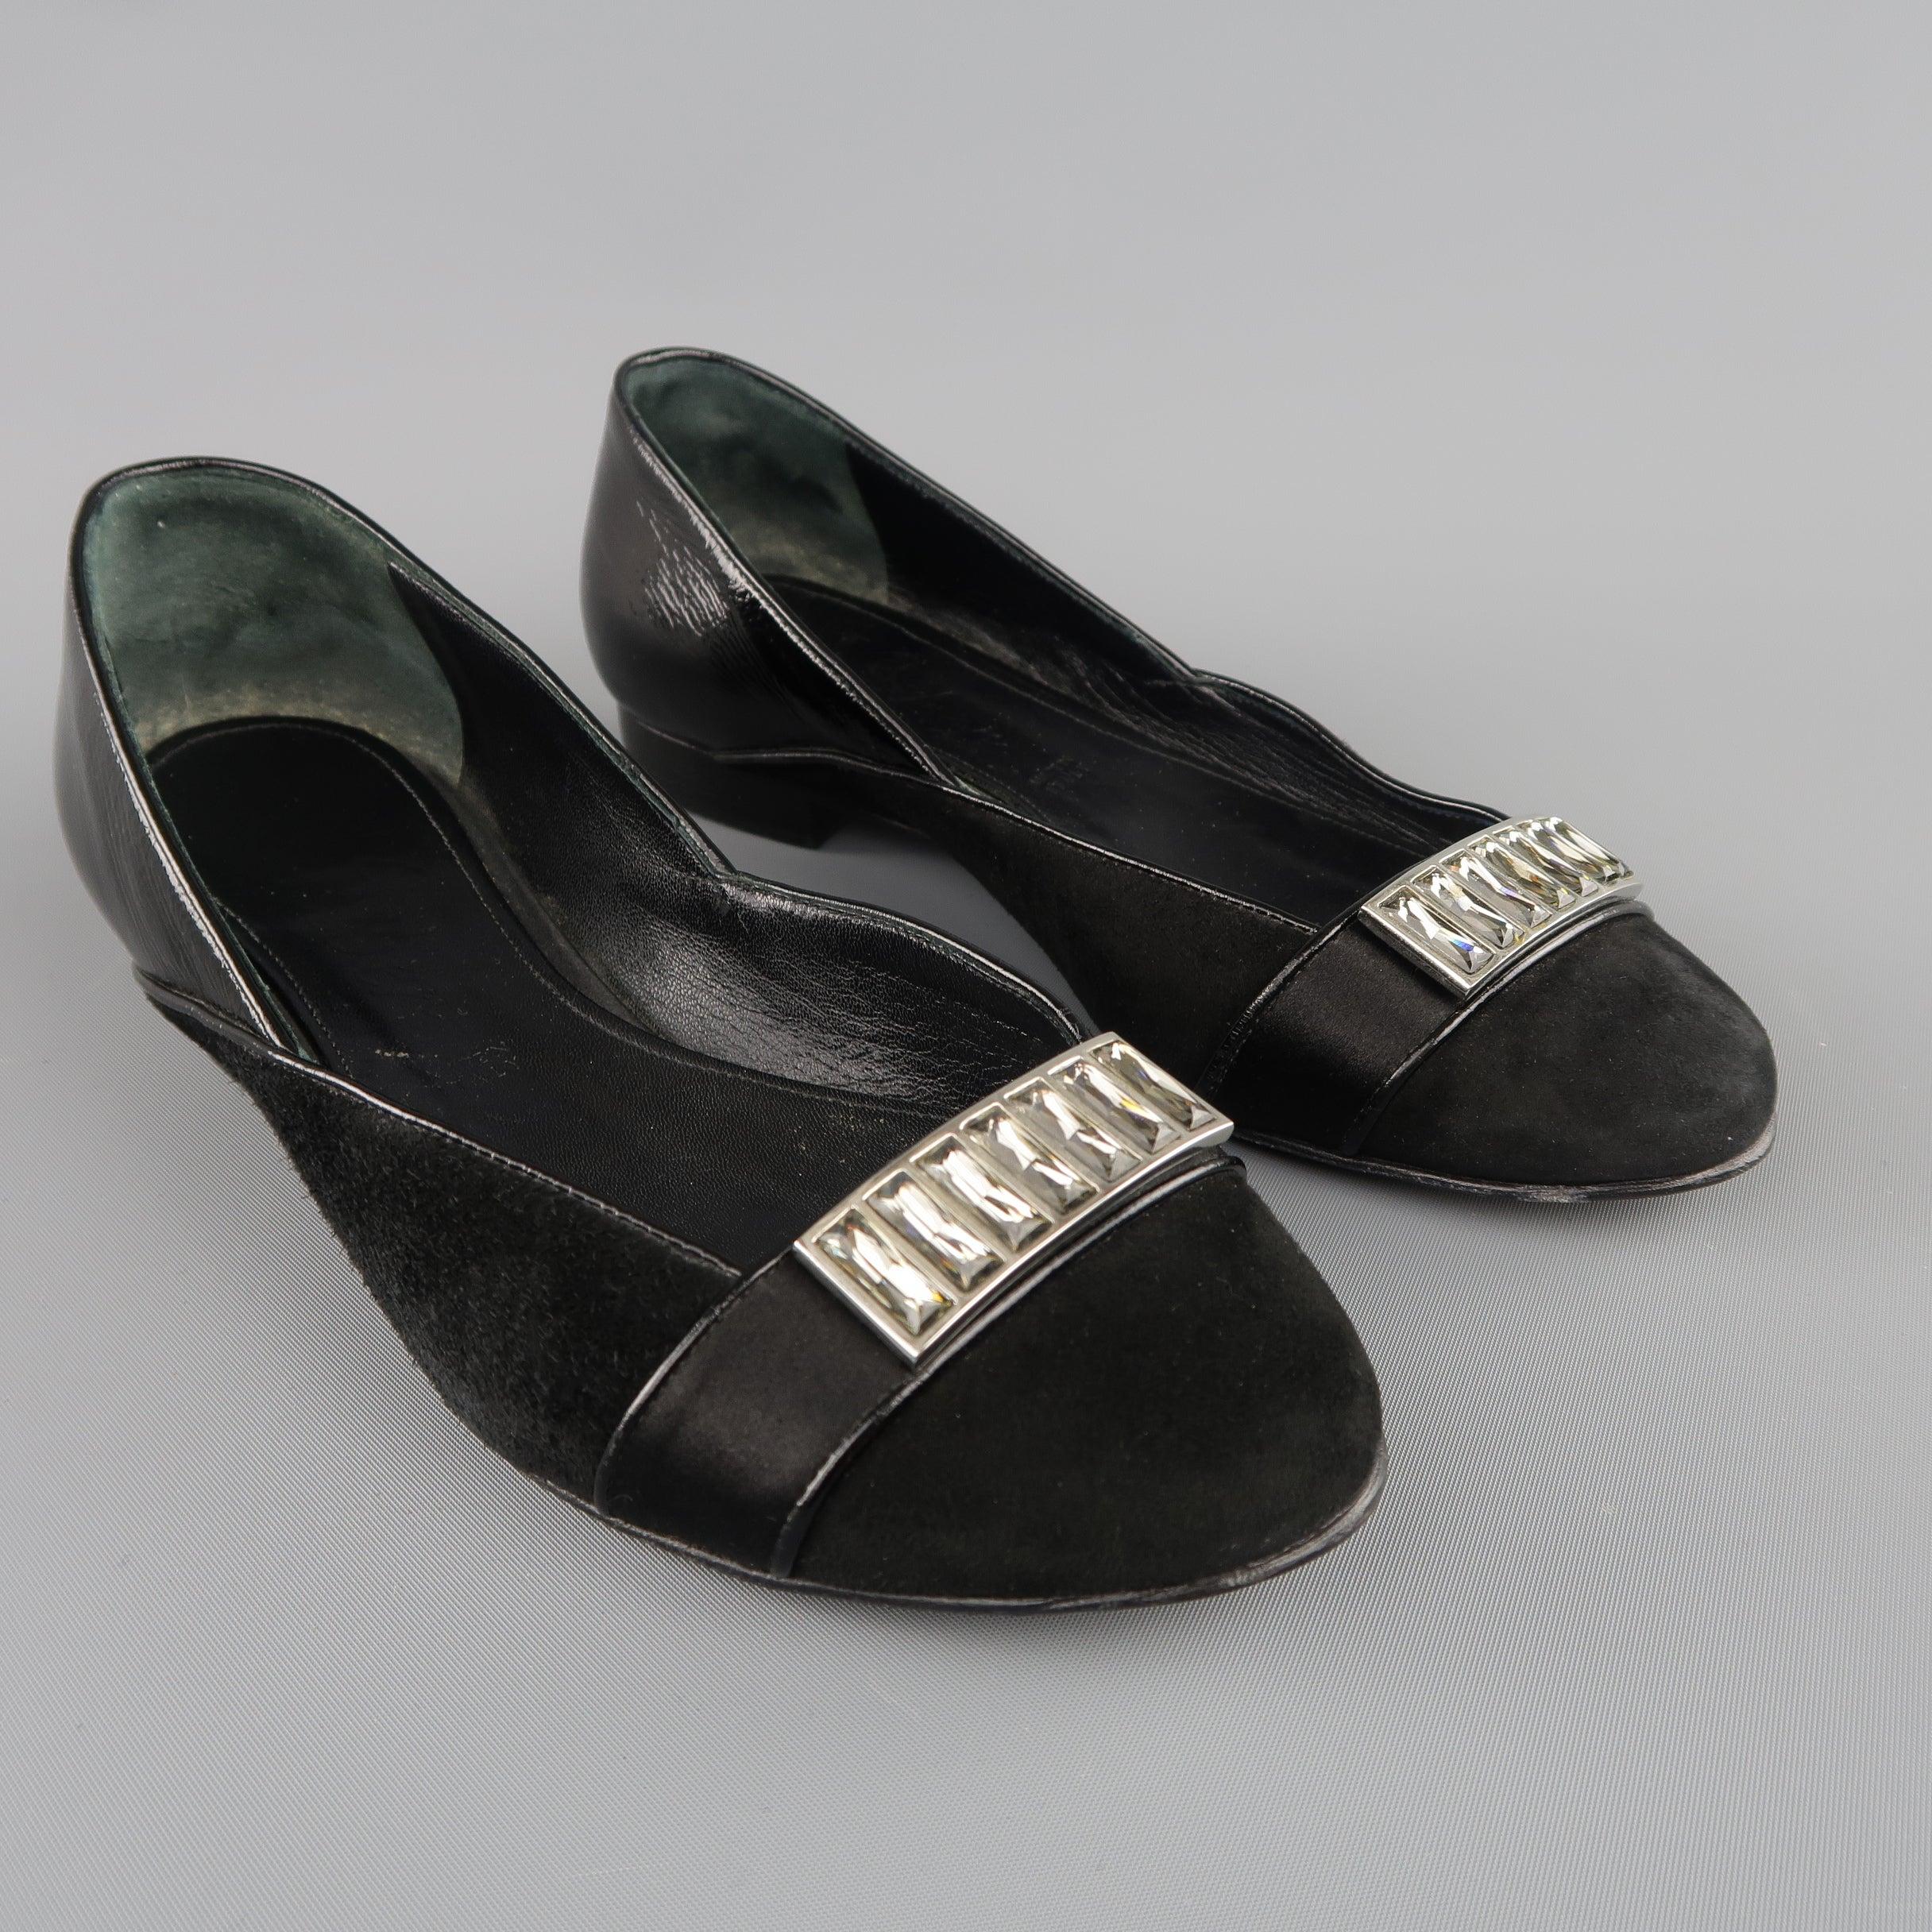 Les chaussures plates JUDITH LEIBER sont en daim noir et présentent un talon en cuir verni ainsi qu'une bride en satin avec une broche en strass. Fabriquées en Italie.
Bon état d'origine.
 

Marqué :   5 B
l	Semelle extérieure : 9 x 3 pouces 

  
 